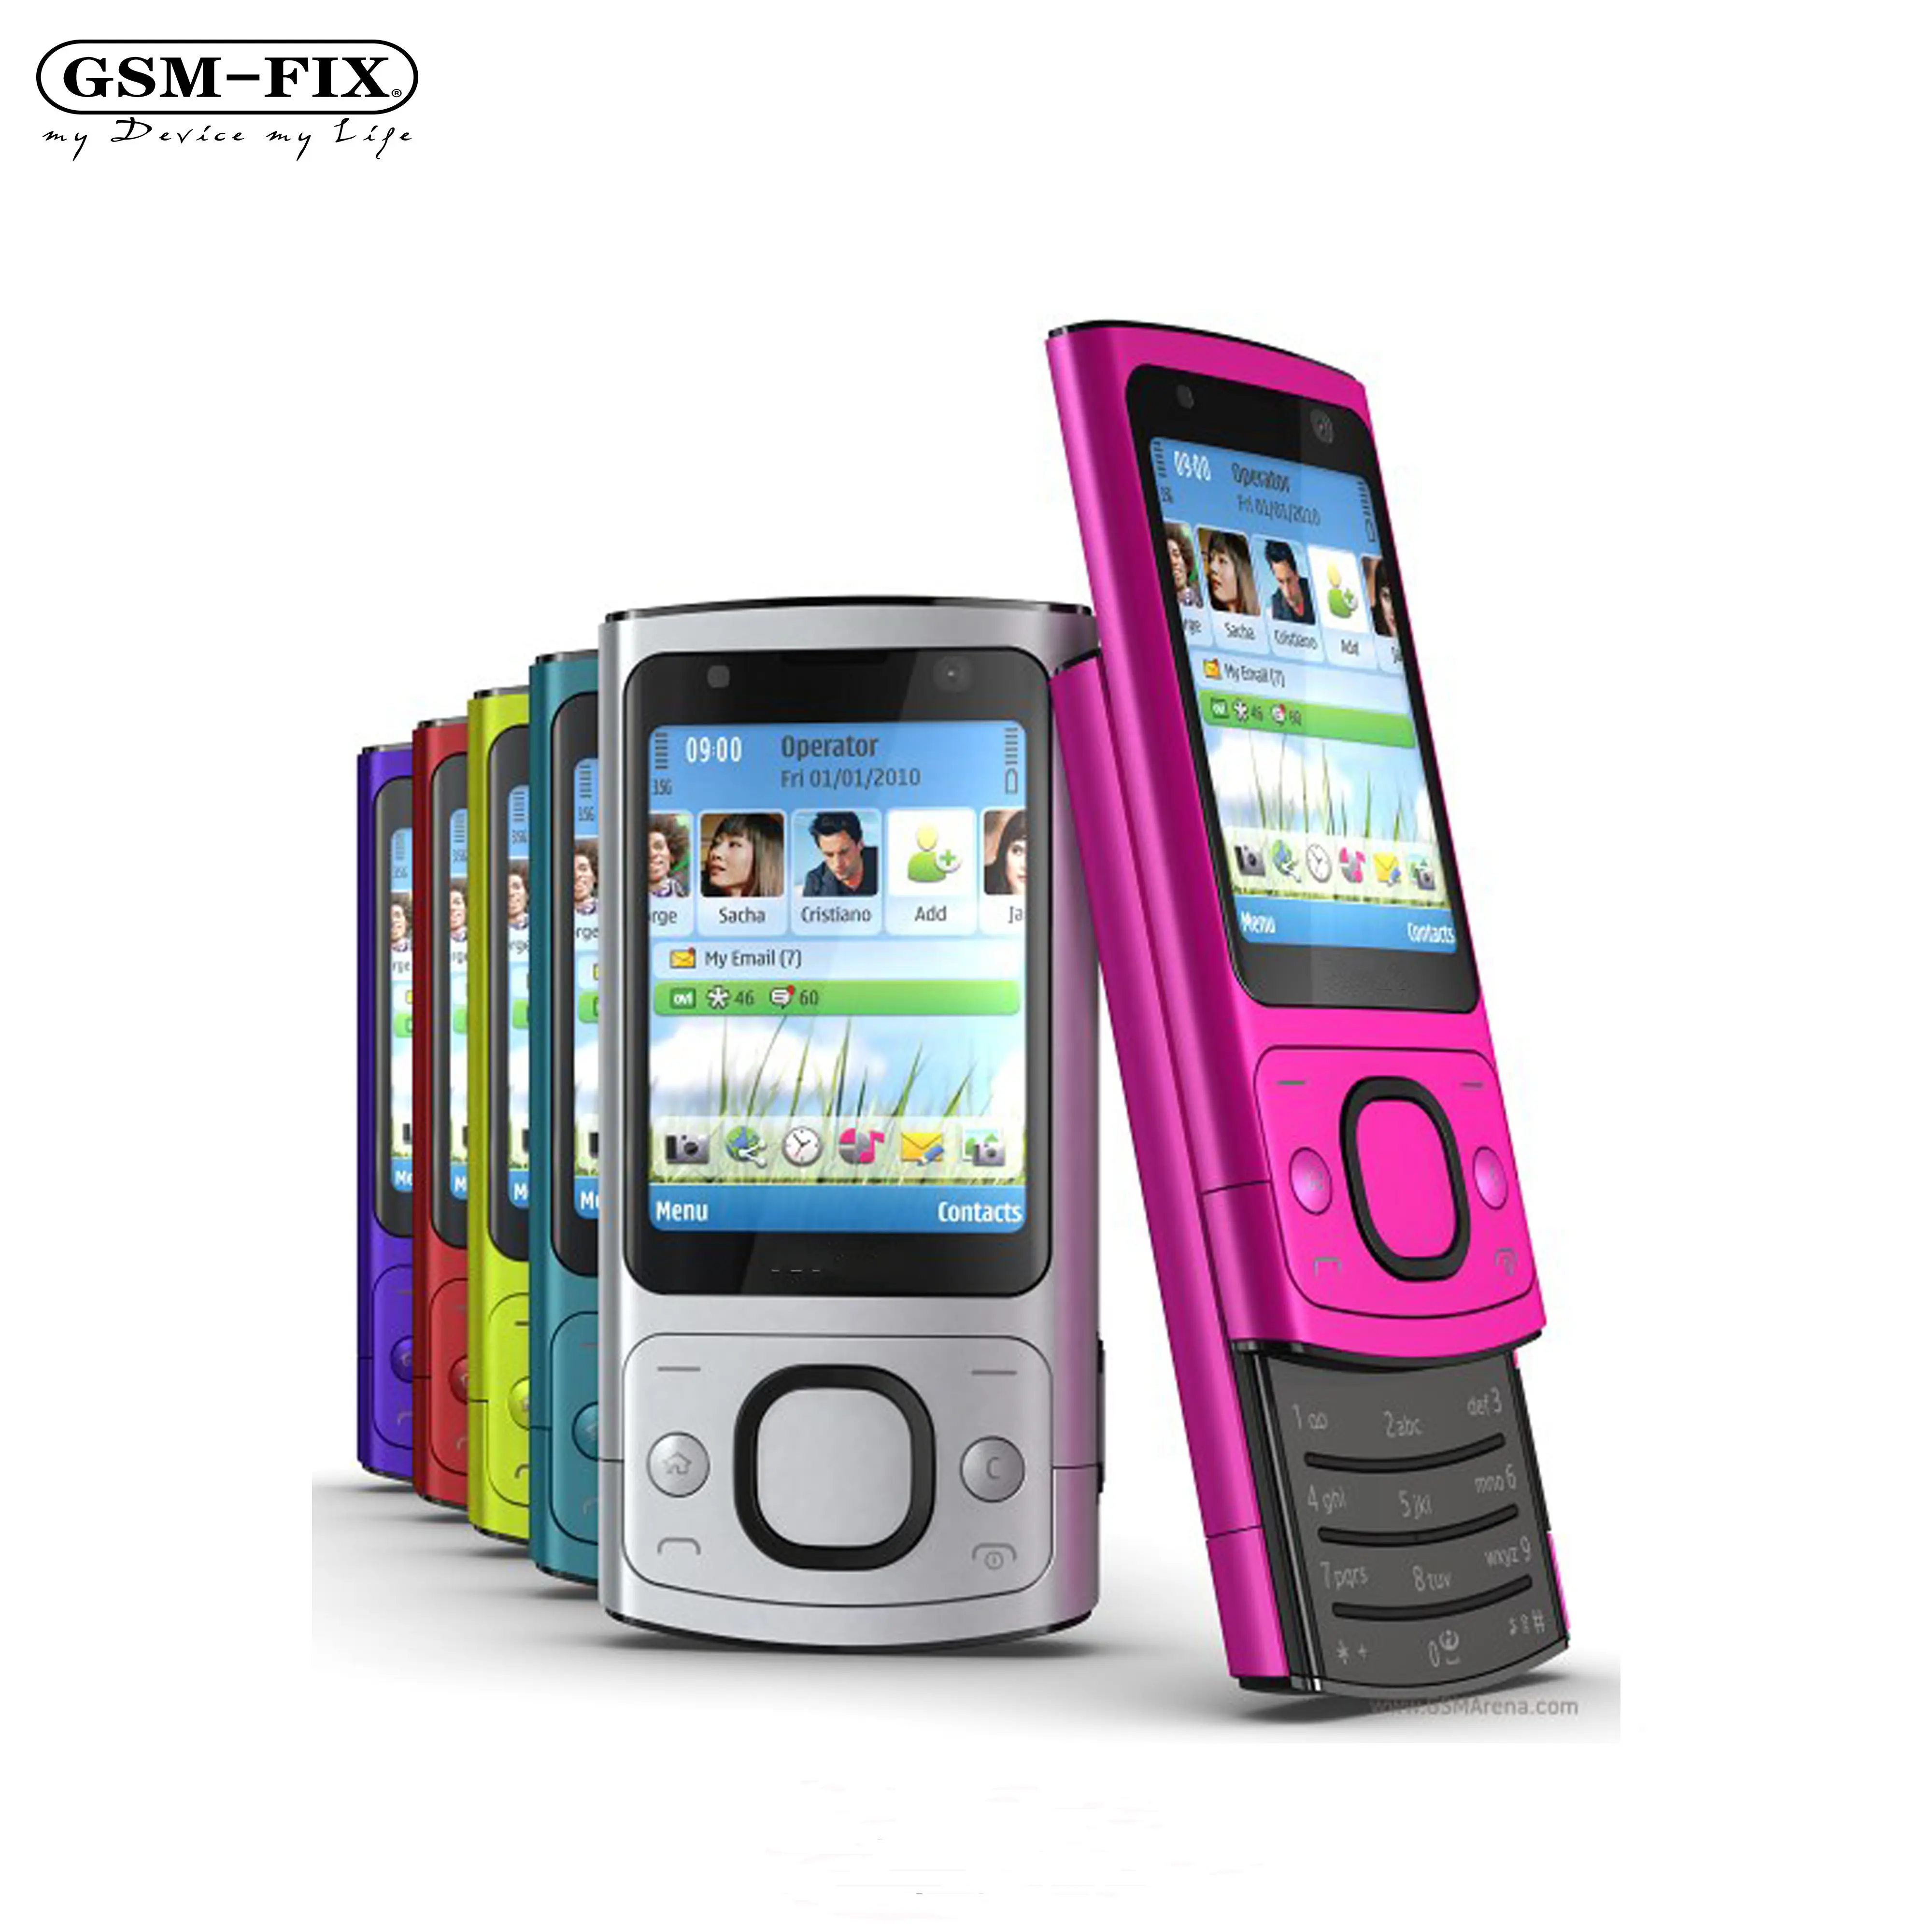 GSM-FIX originale 6700 s per la fotocamera del telefono cellulare NOKIA 5.0MP Bluetooth Java sbloccato 6700 slide Phone